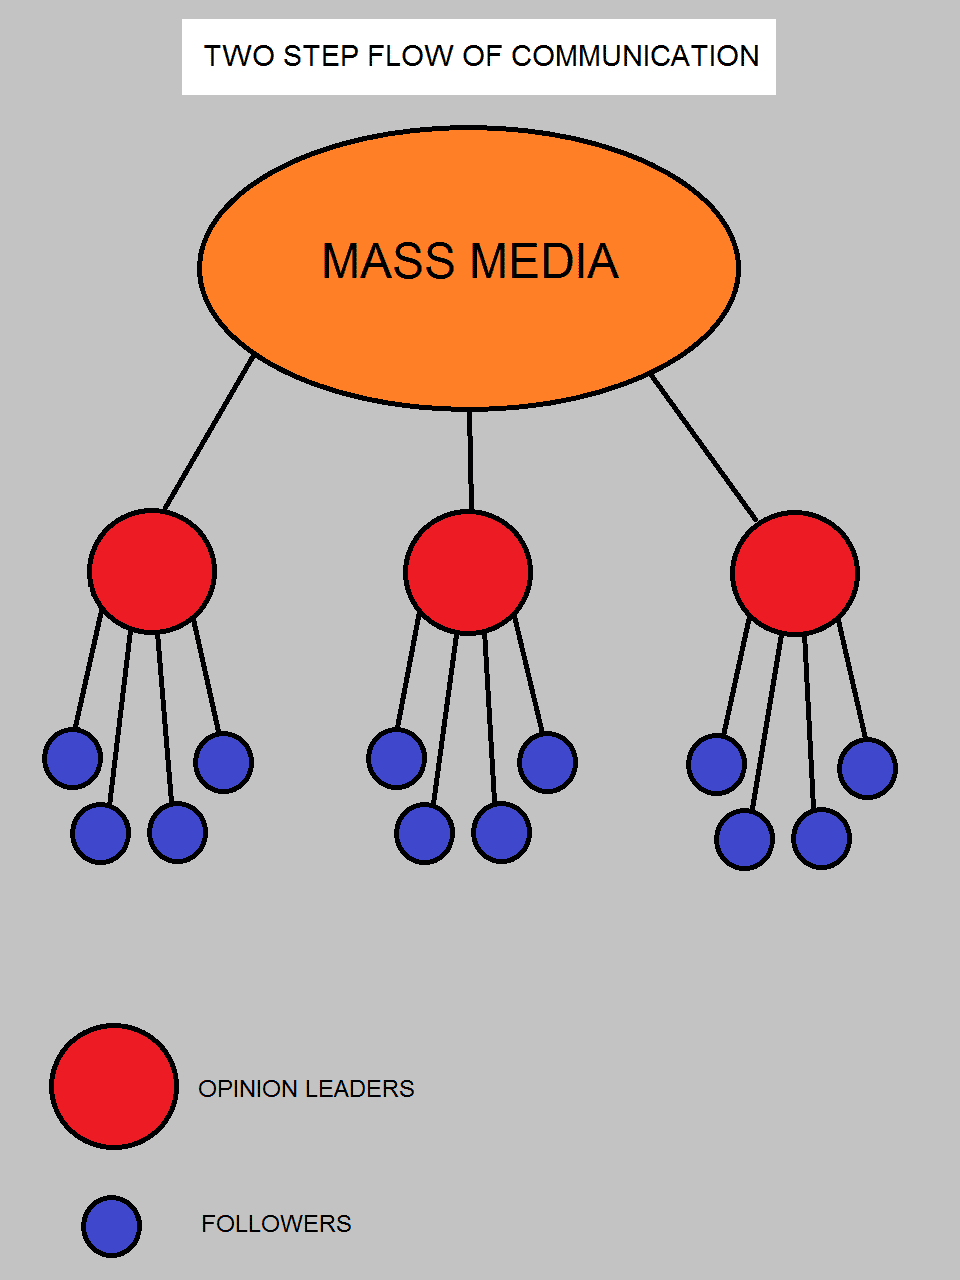 Comment une information se propage selon la théorie de la communication à deux étages. © Nisimlevi, Wikimedia Commons, CC by-sa 3.0 